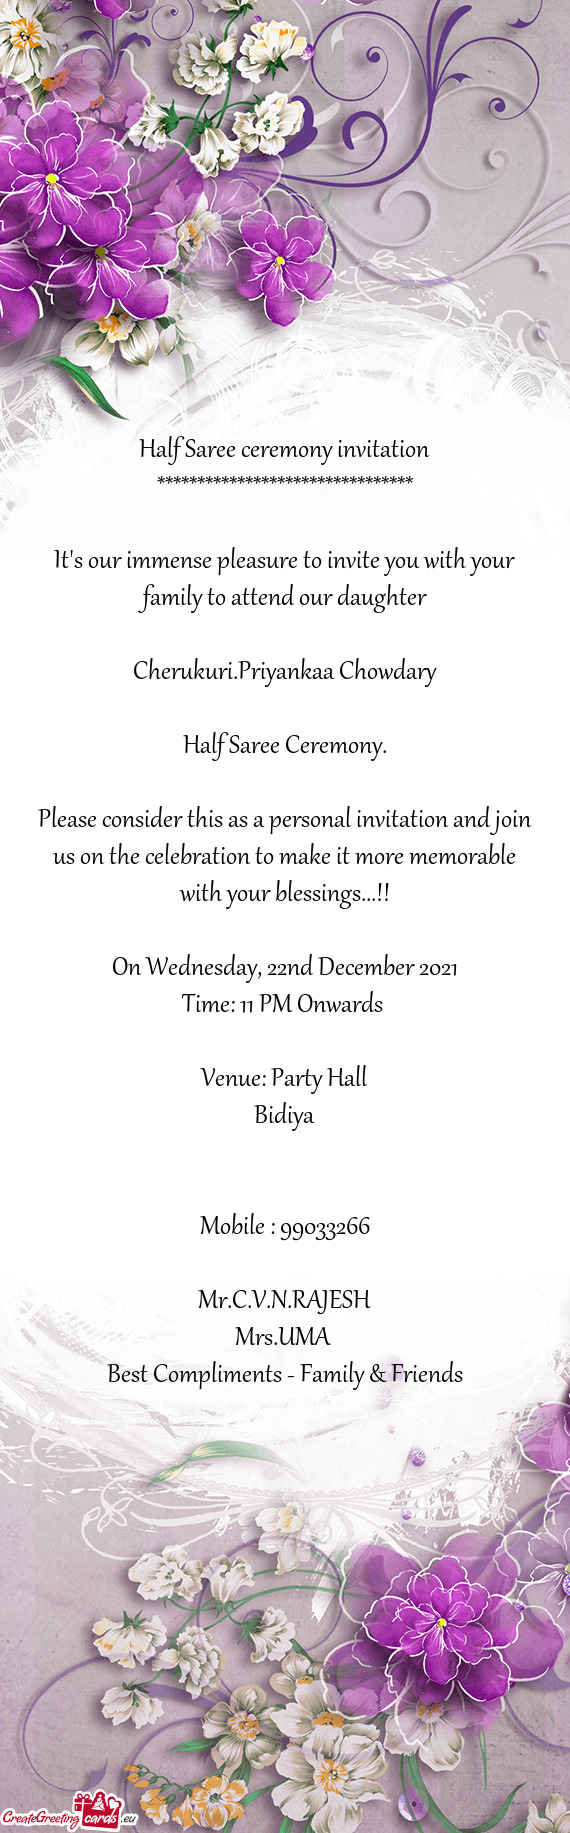 Cherukuri.Priyankaa Chowdary